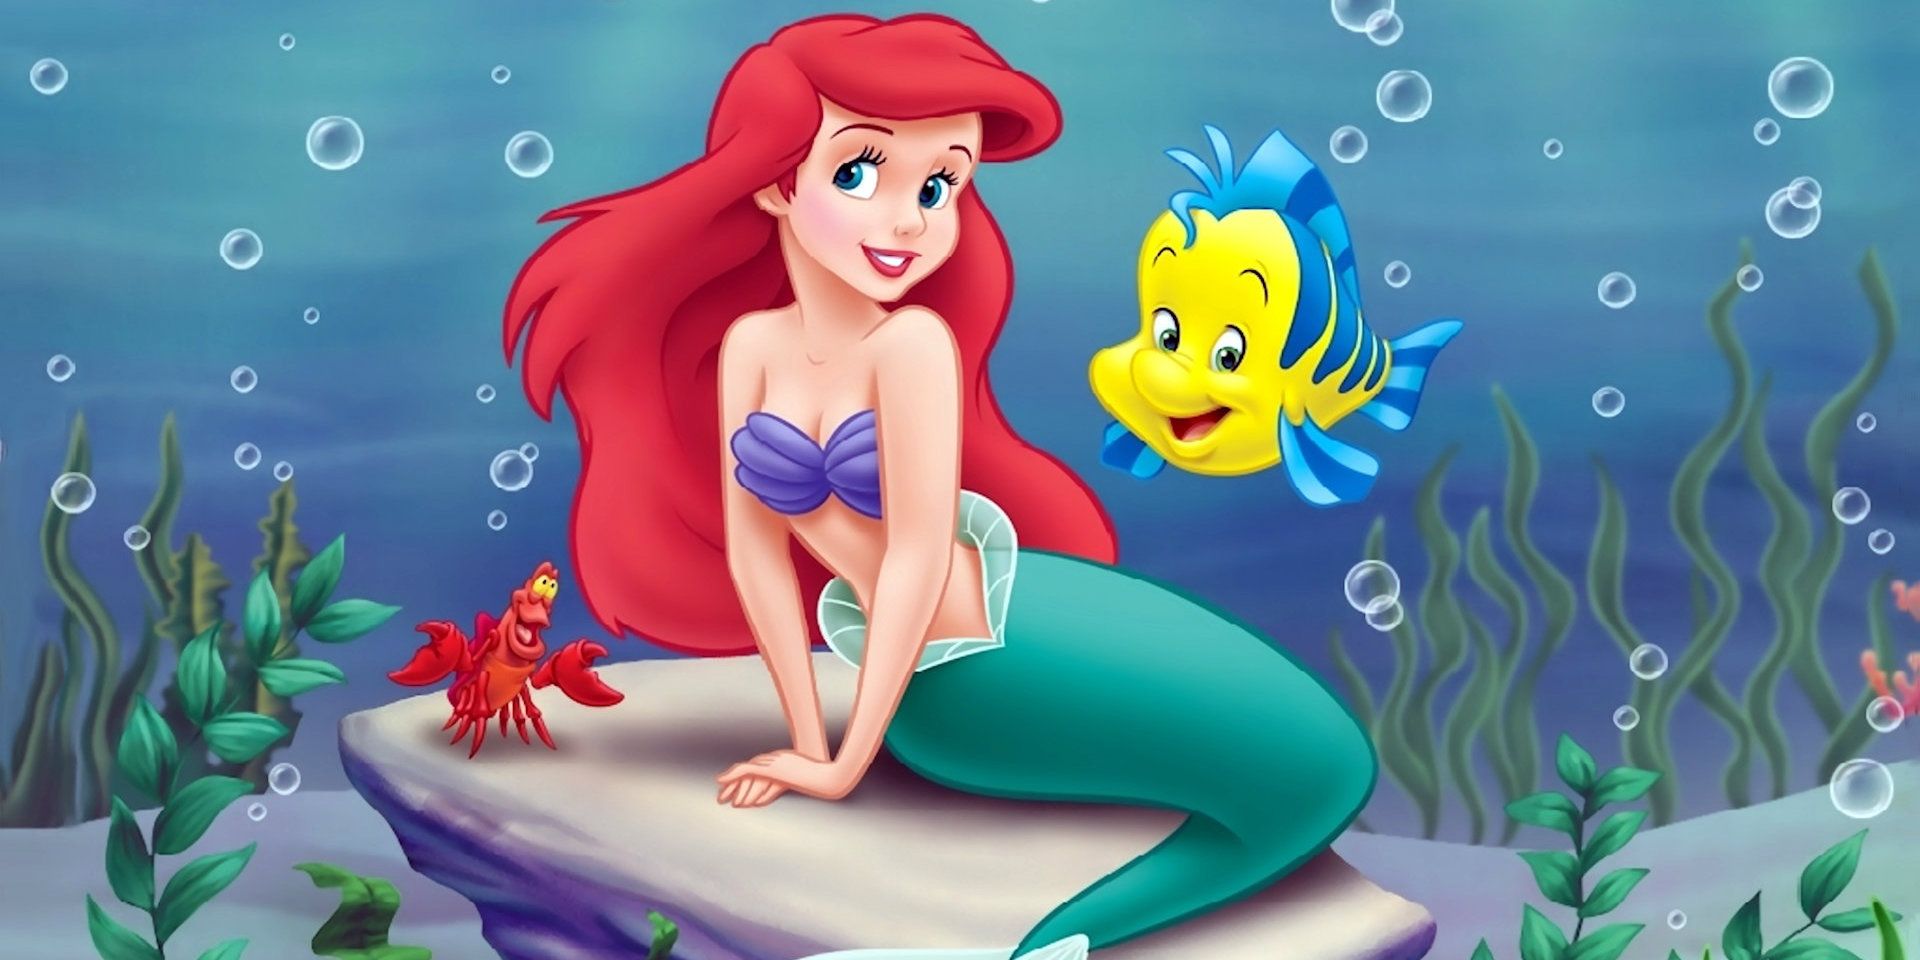 Disney's Little Mermaid: What Zendaya Could Look Like As Ariel